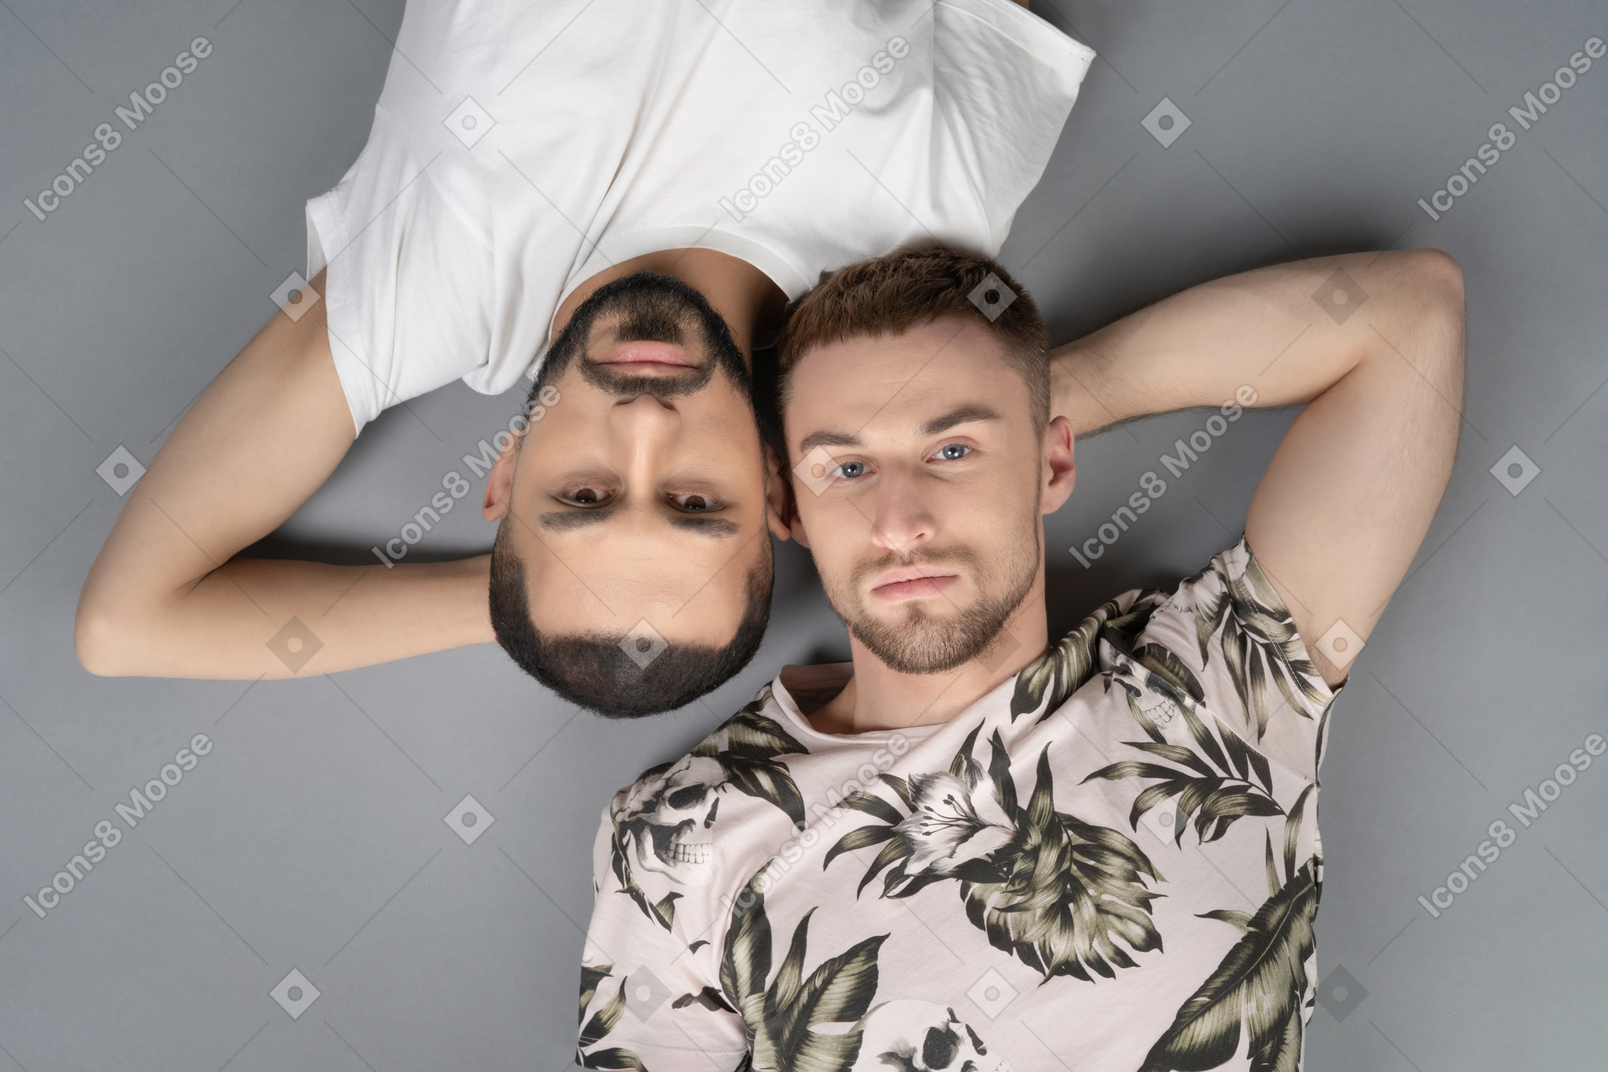 Mise à plat de deux jeunes hommes de race blanche allongés symétriquement tête à tête regardant la caméra